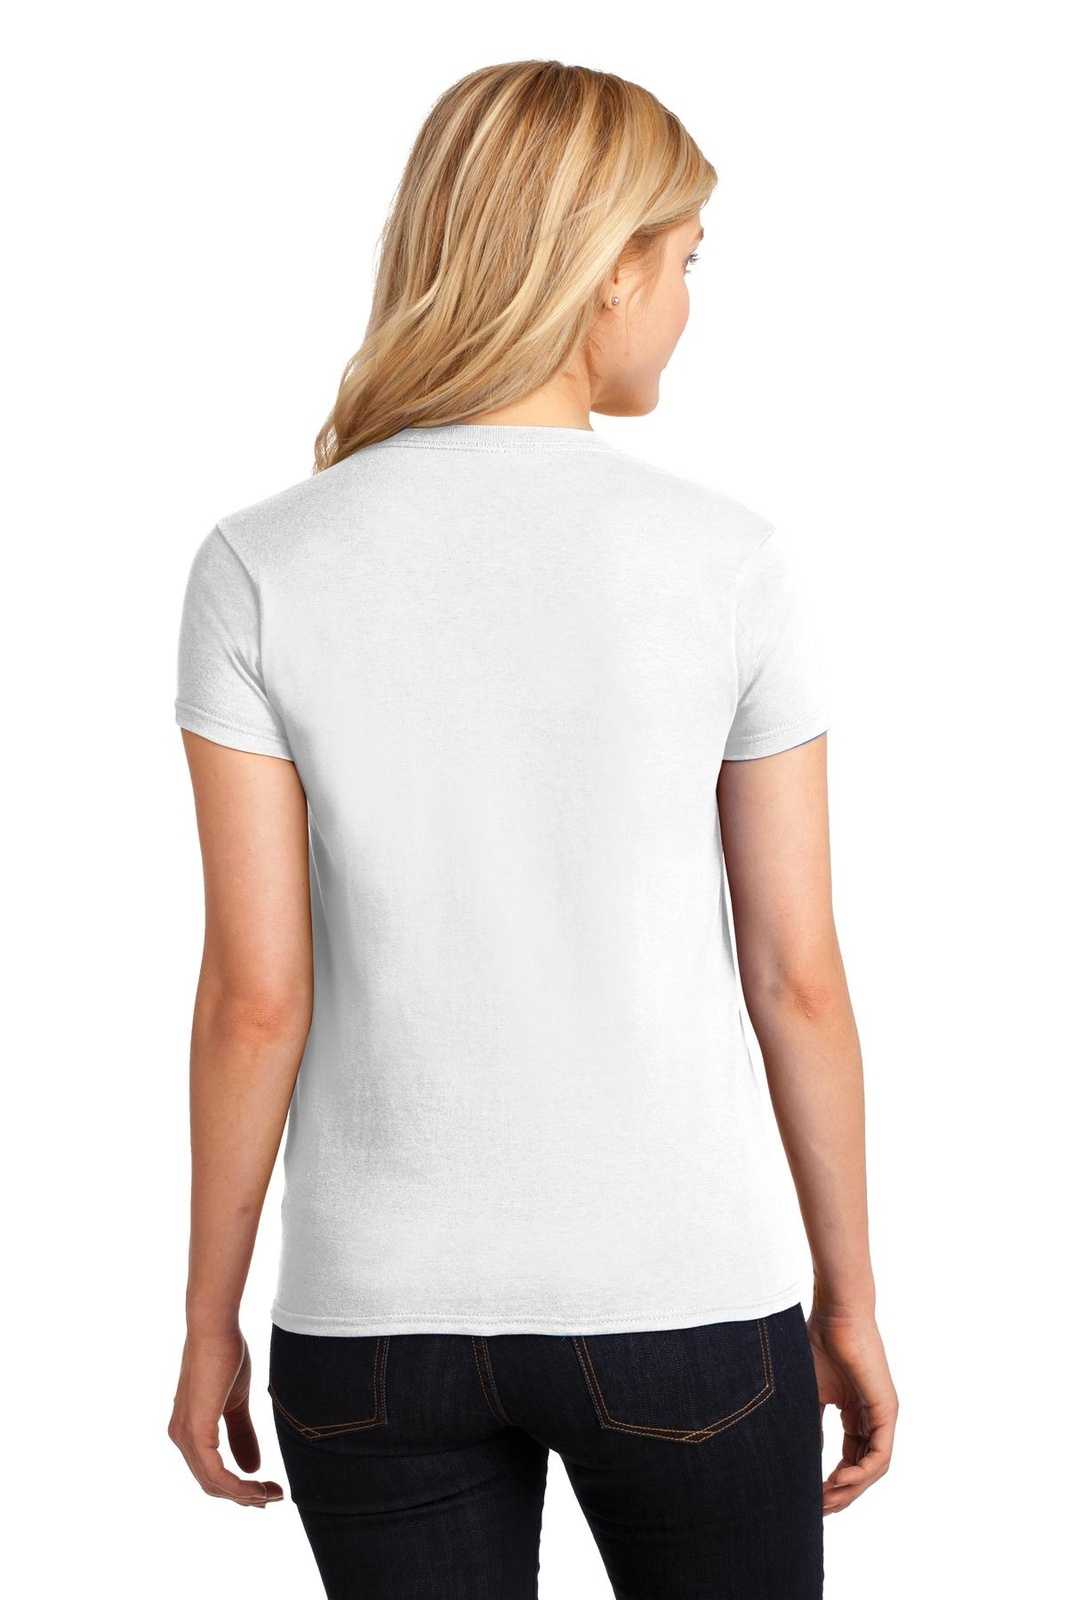 Gildan 5000L Ladies Heavy Cotton 100% Cotton T-Shirt - White - HIT a Double